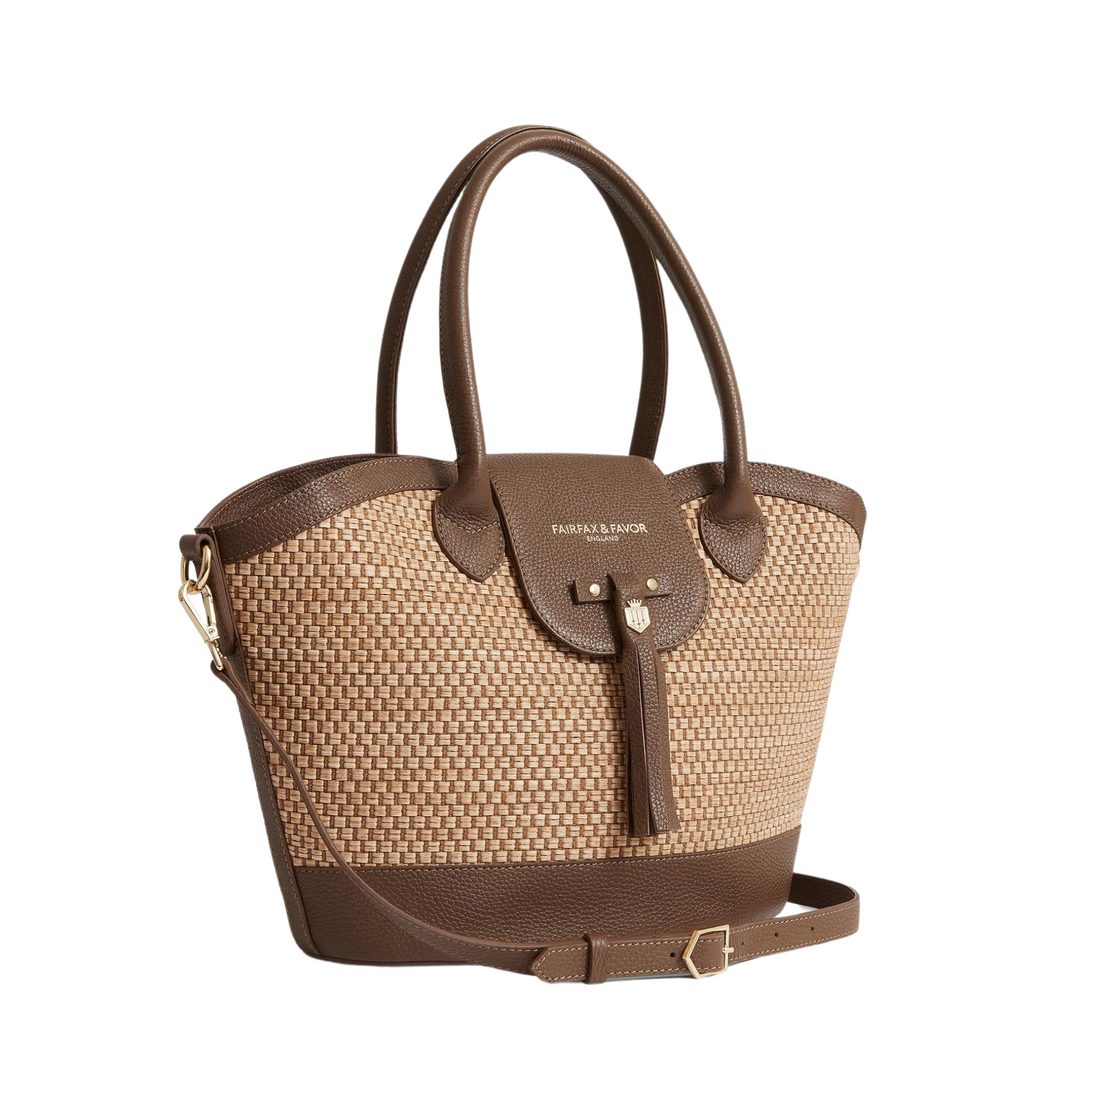 Windsor Basket Bag Tan Leather